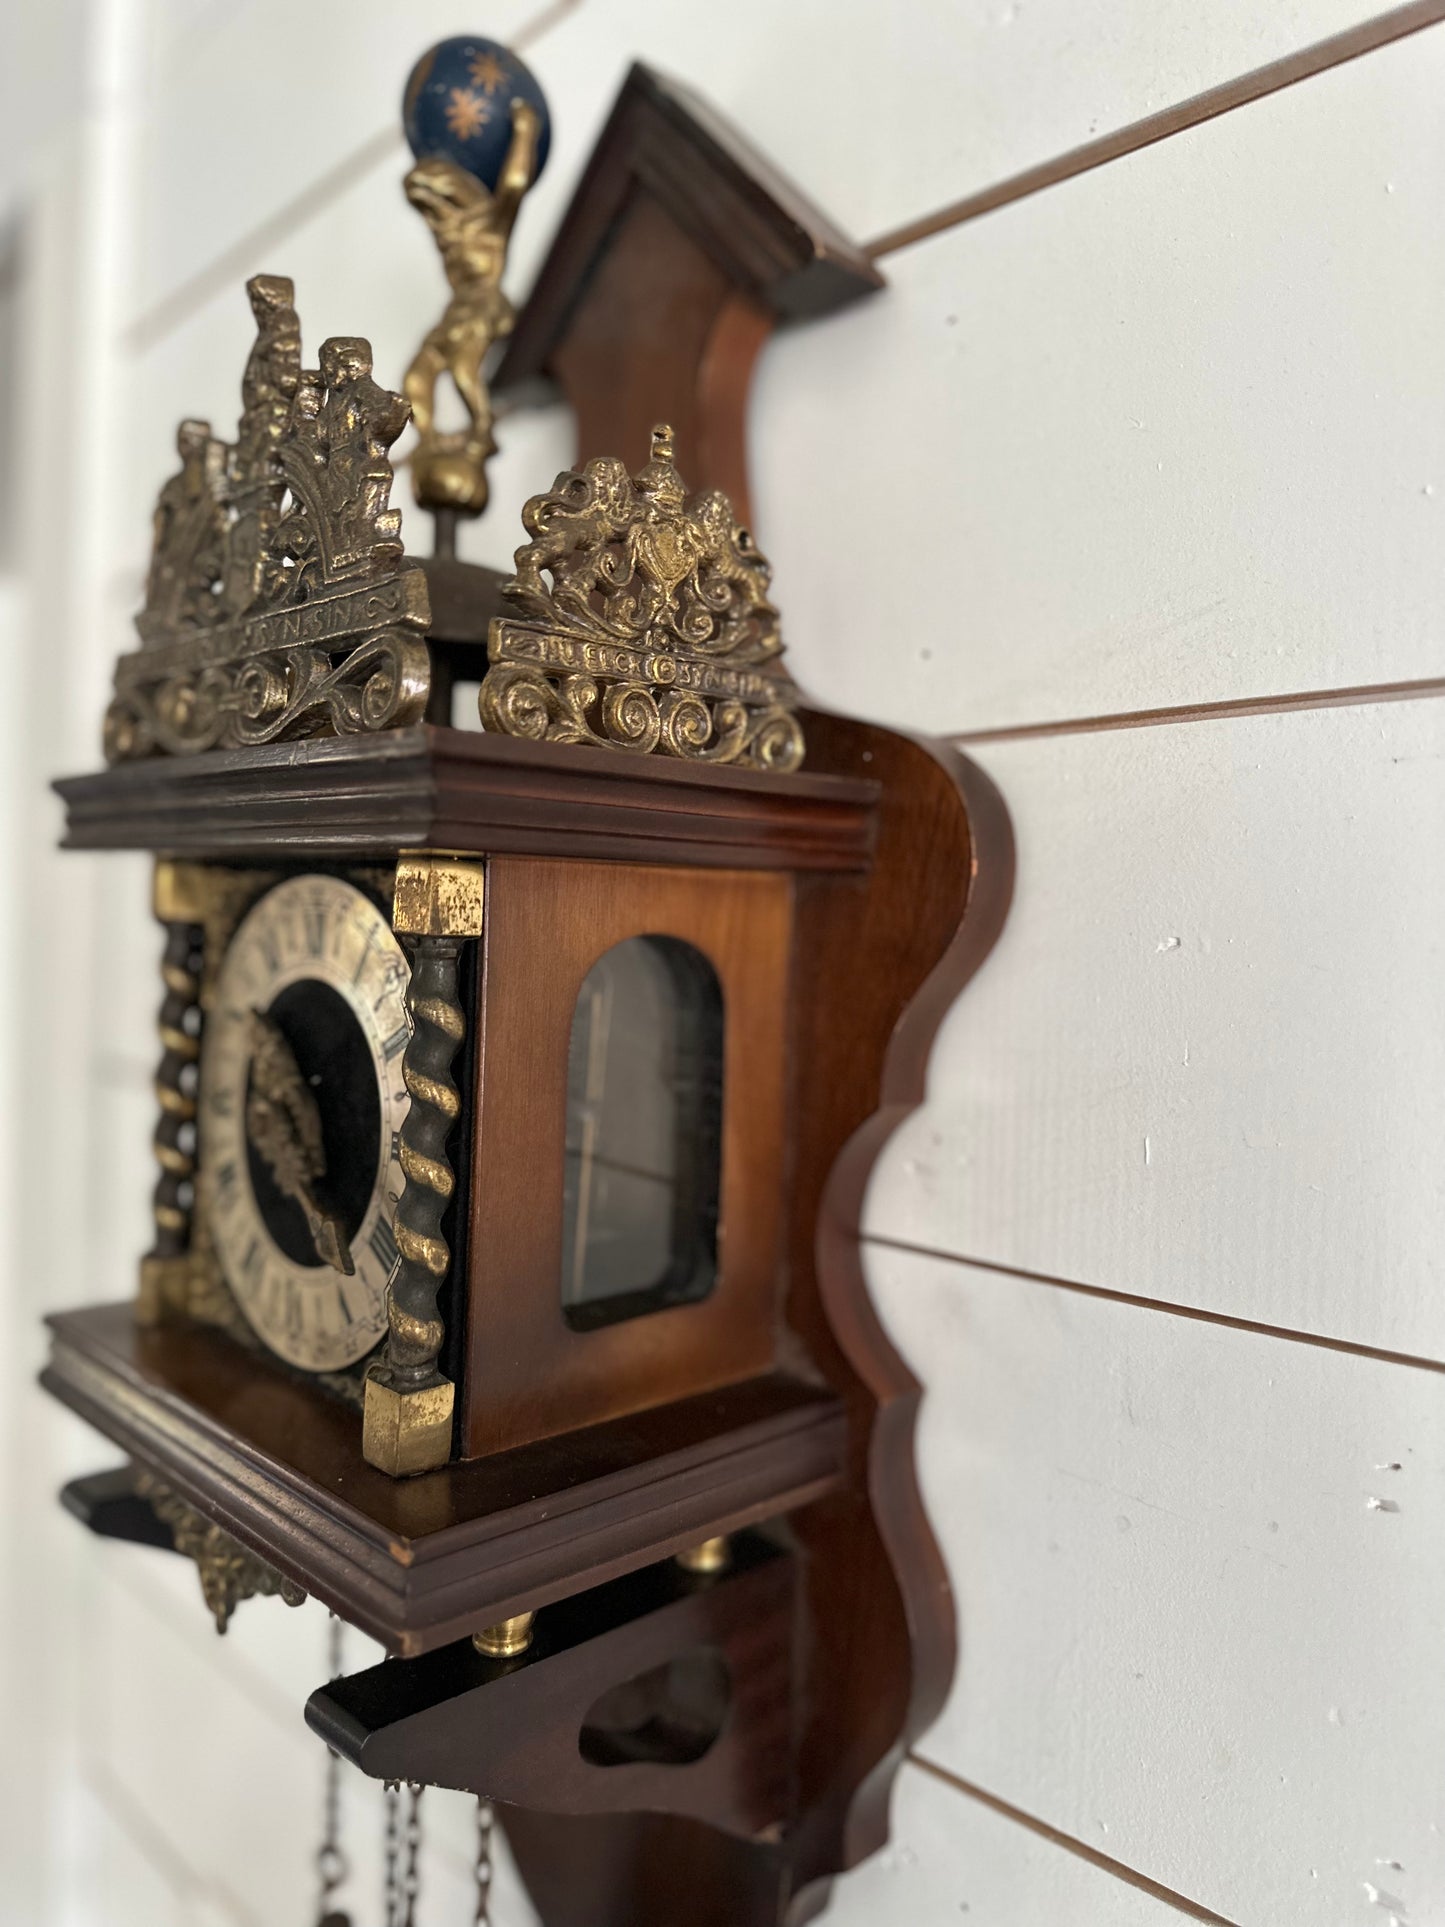 Antique Dutch NU ELCK wall clock